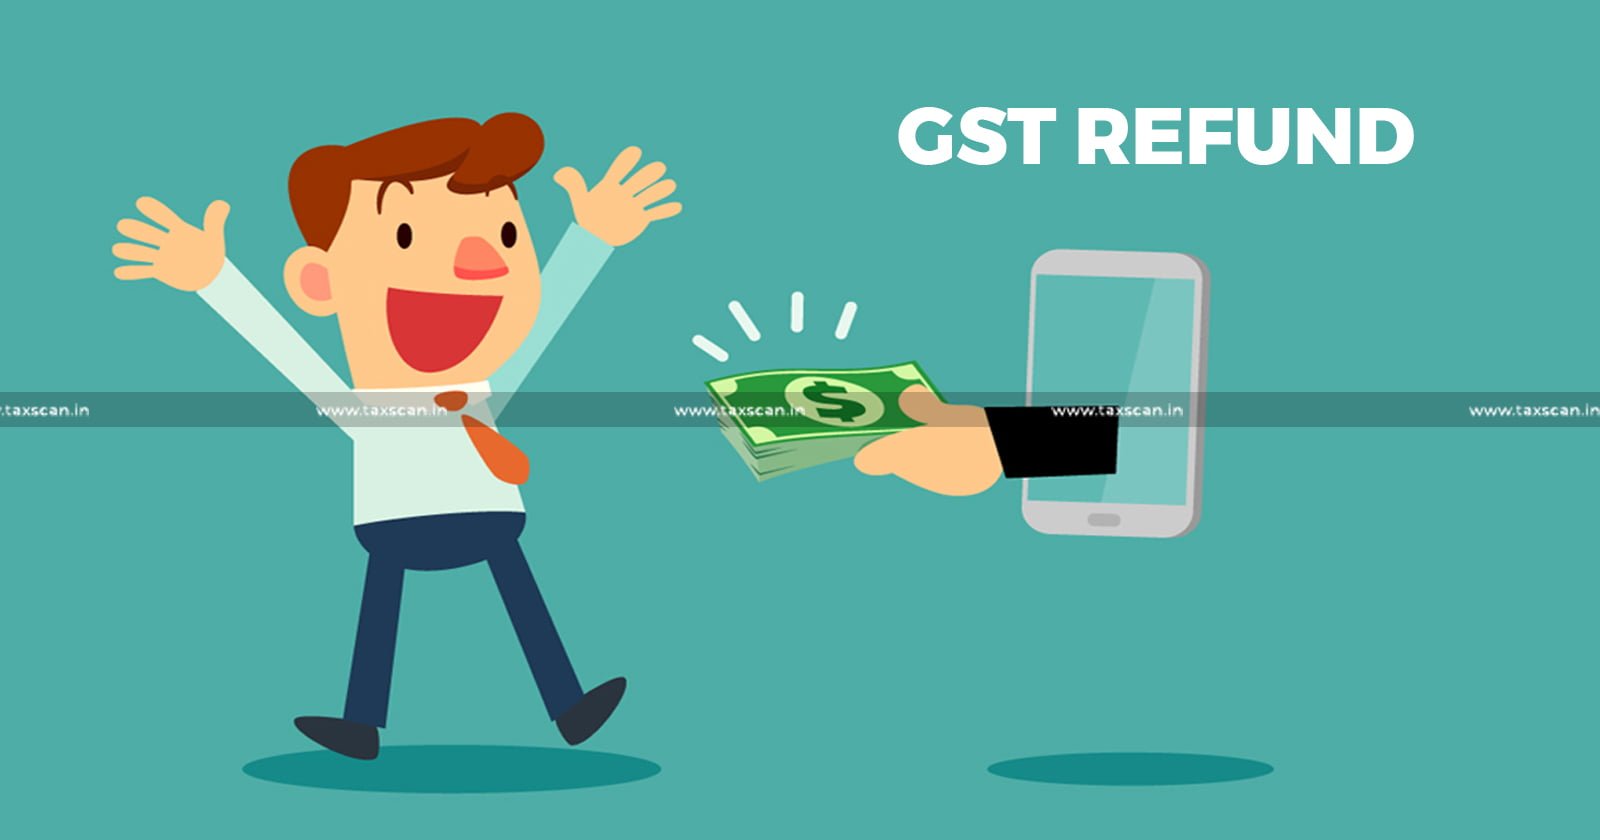 Delhi High Court - GST - GST Refund - Non migrated GST numbers - GST portal - GST Portal error - taxscan